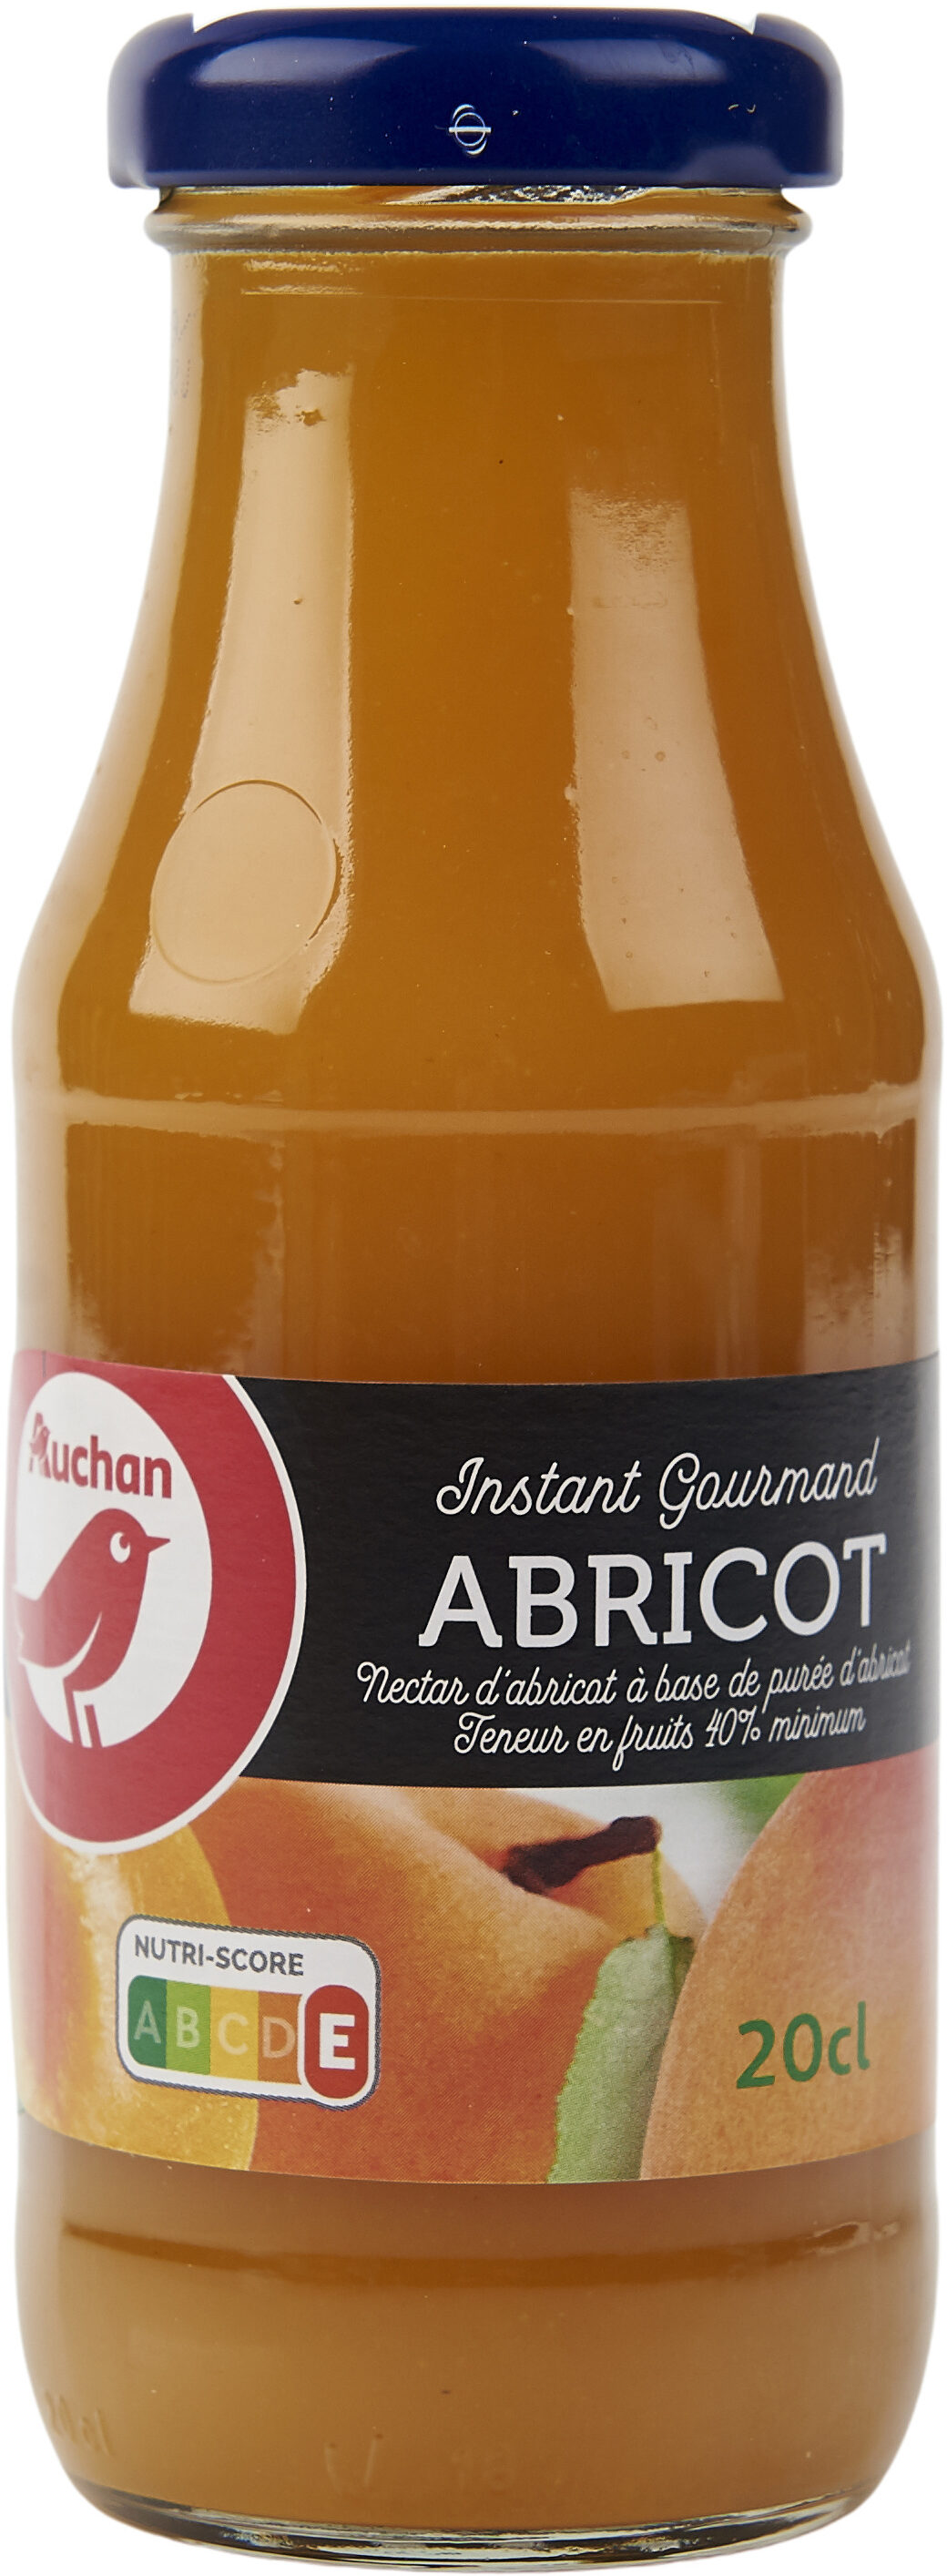 ABRICOT - Nectar d'abricot à base de purée d'abricot. Teneur en fruits : 40% - Product - fr